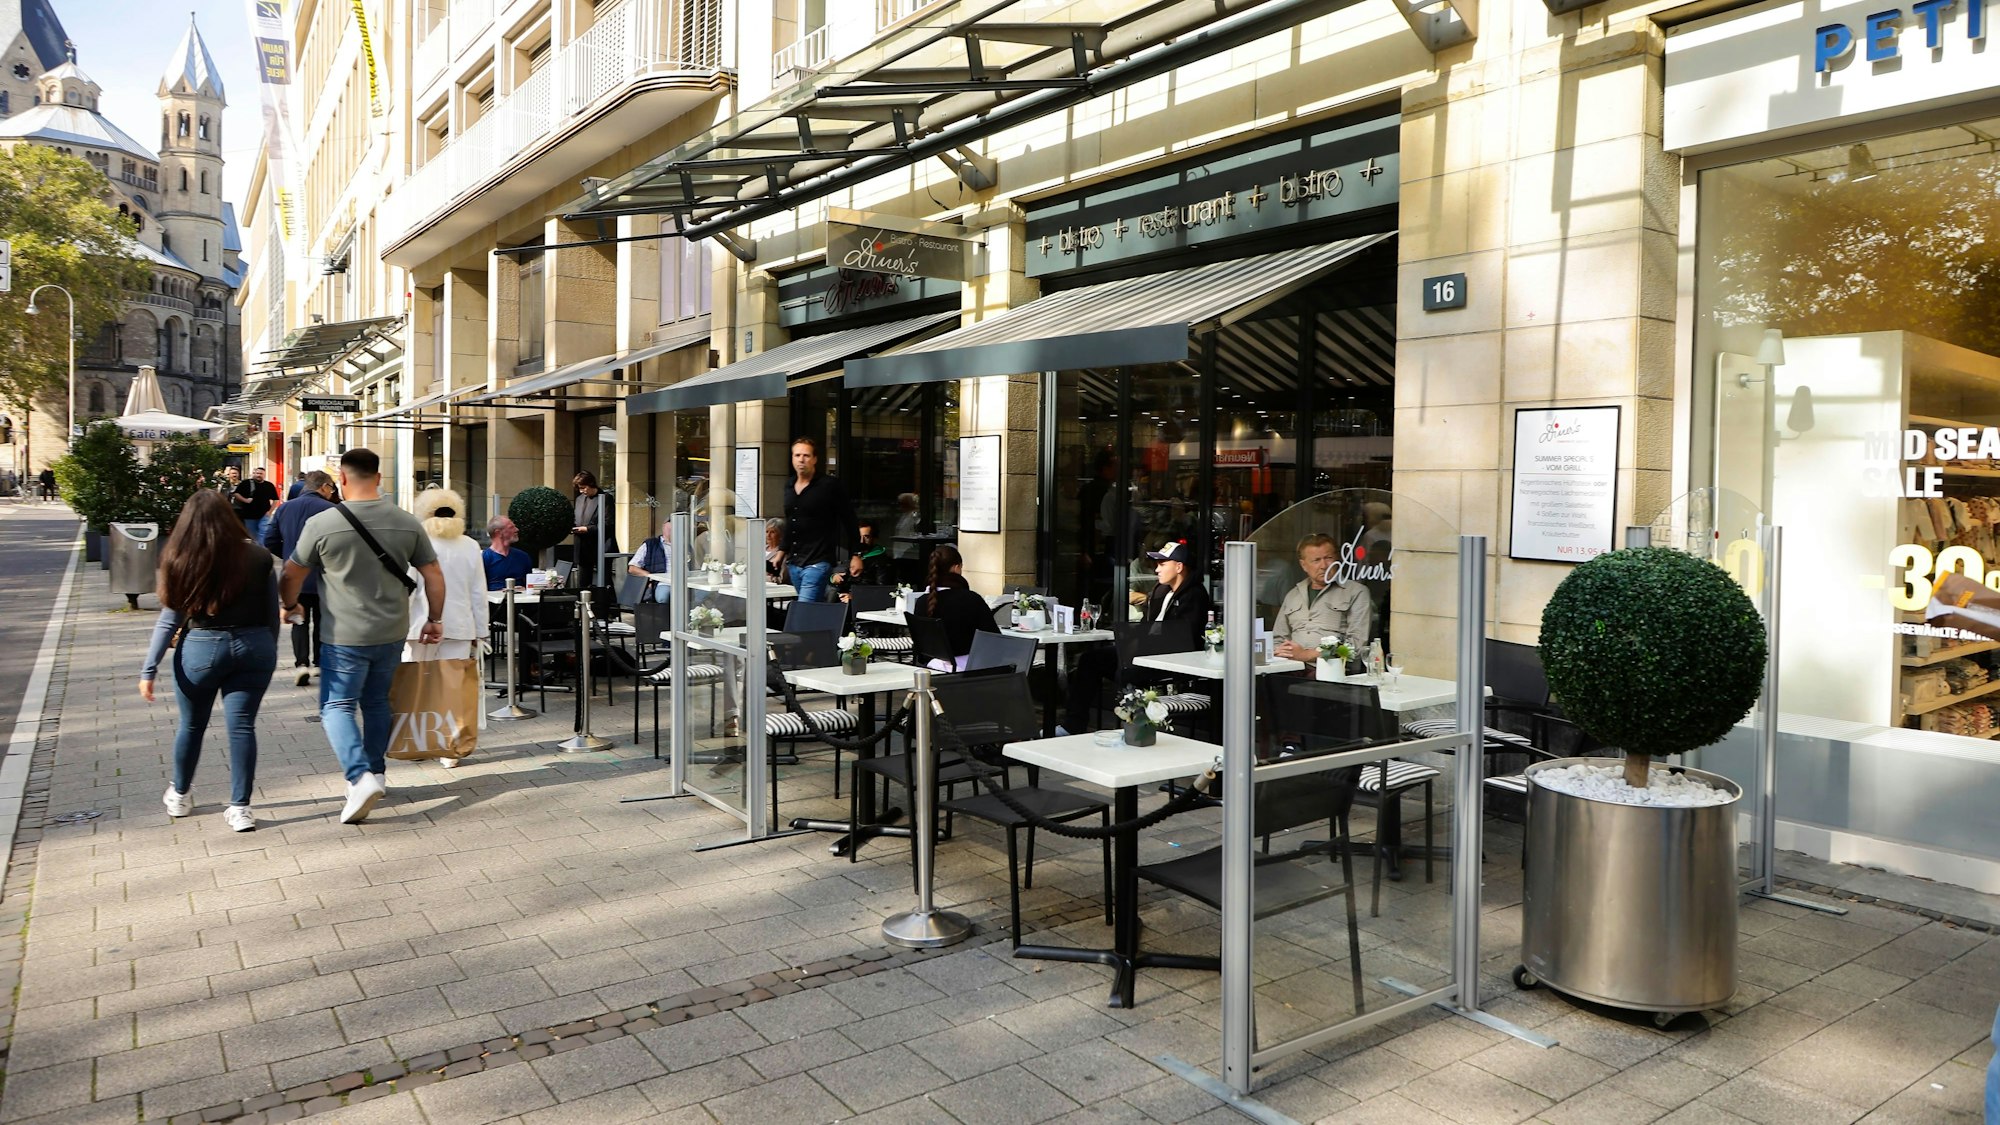 Blick von außen auf das Bistro Diner's am Neumarkt in Köln. Stühle und Tische sind vor dem Lokal aufgebaut.